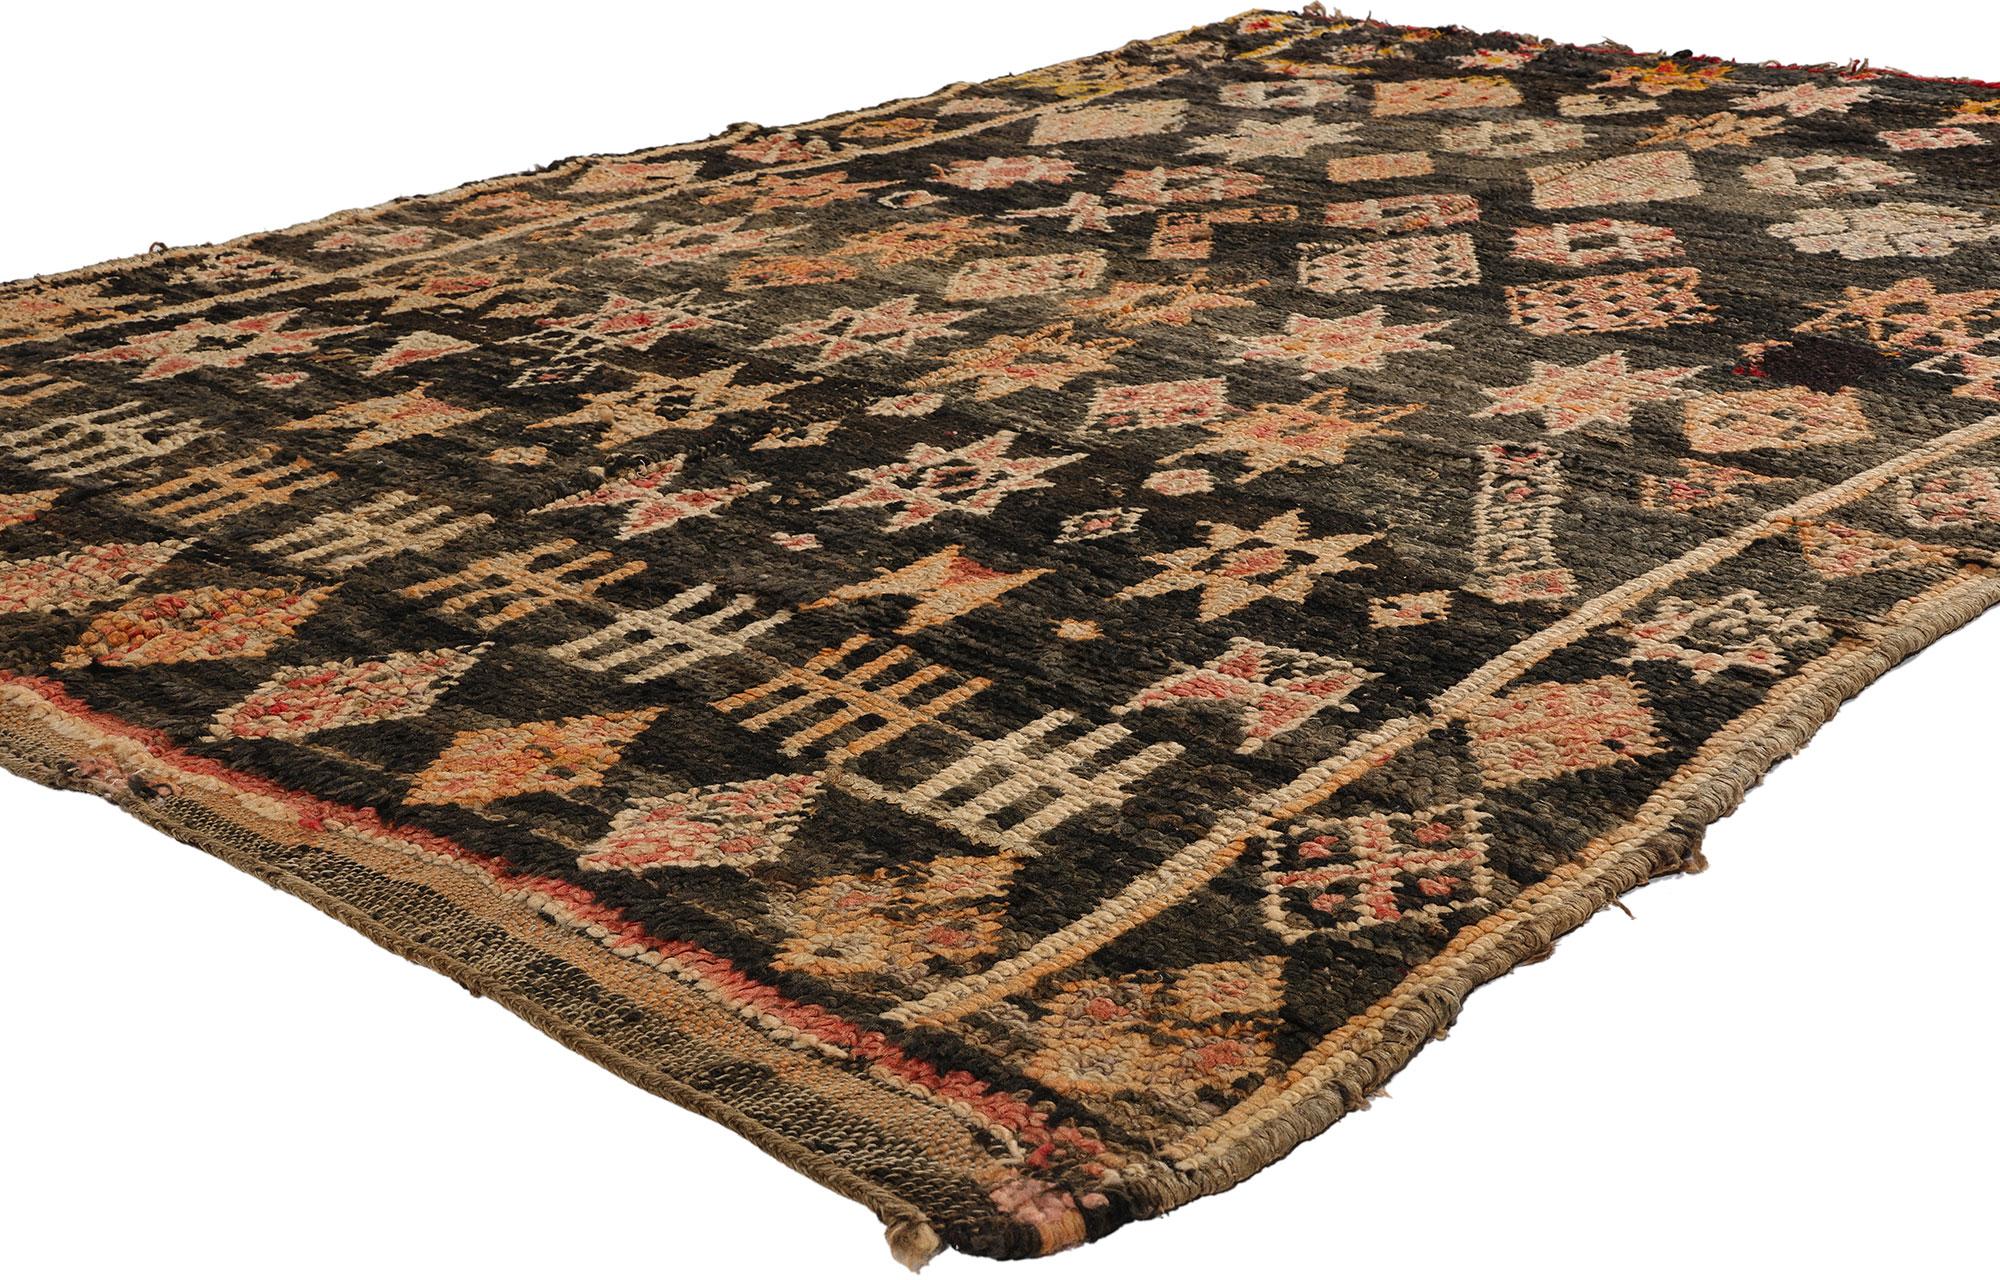 21767 Tapis marocain vintage noir Beni Mrirt, 05'02 x 07'05. Les tapis Beni Mrirt incarnent la tradition estimée du tissage marocain, célèbre pour sa texture somptueuse, ses motifs géométriques complexes et ses tons de terre apaisants. Fabriqués par